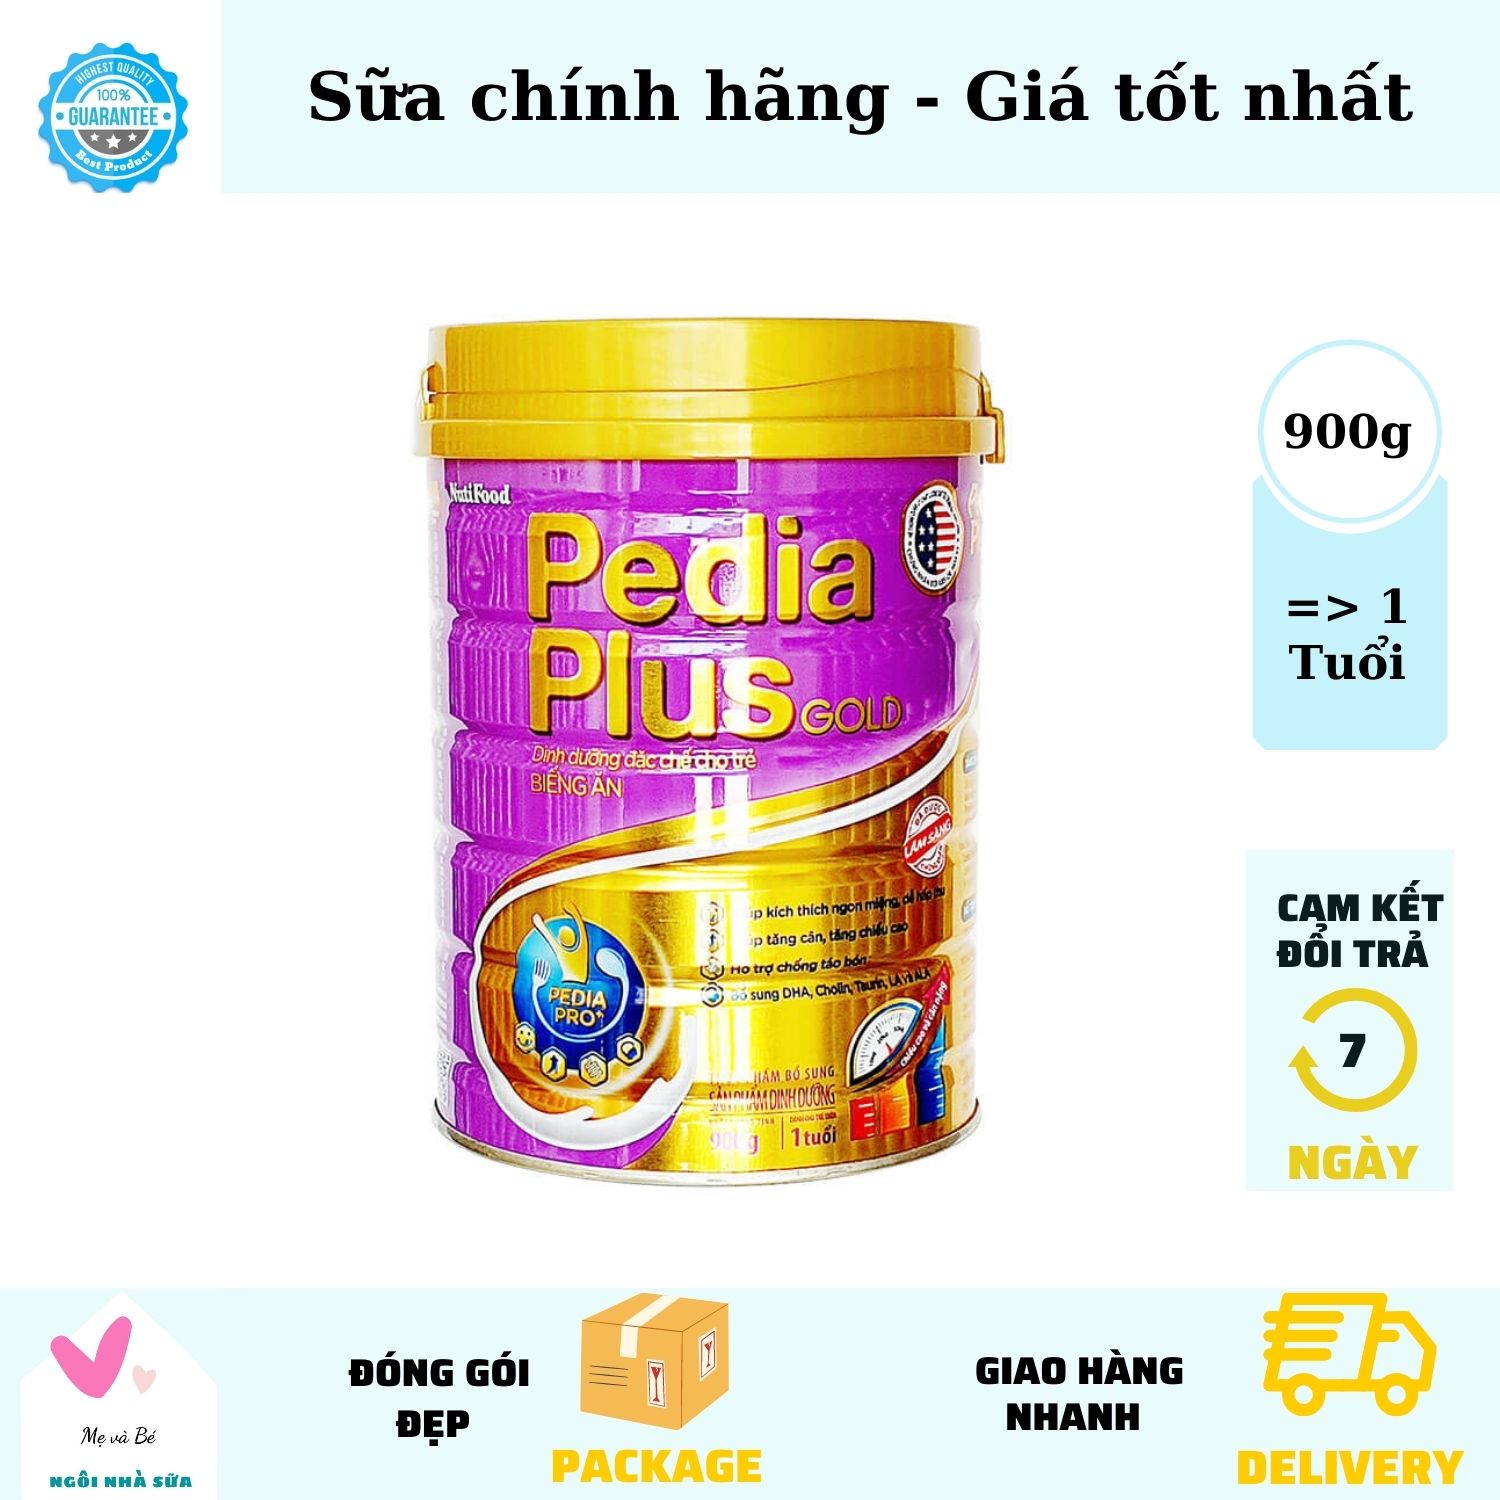 Pedia plus gold, Sữa pedia plus gold date mới 900g cải thiện tiêu hoá phát thumbnail